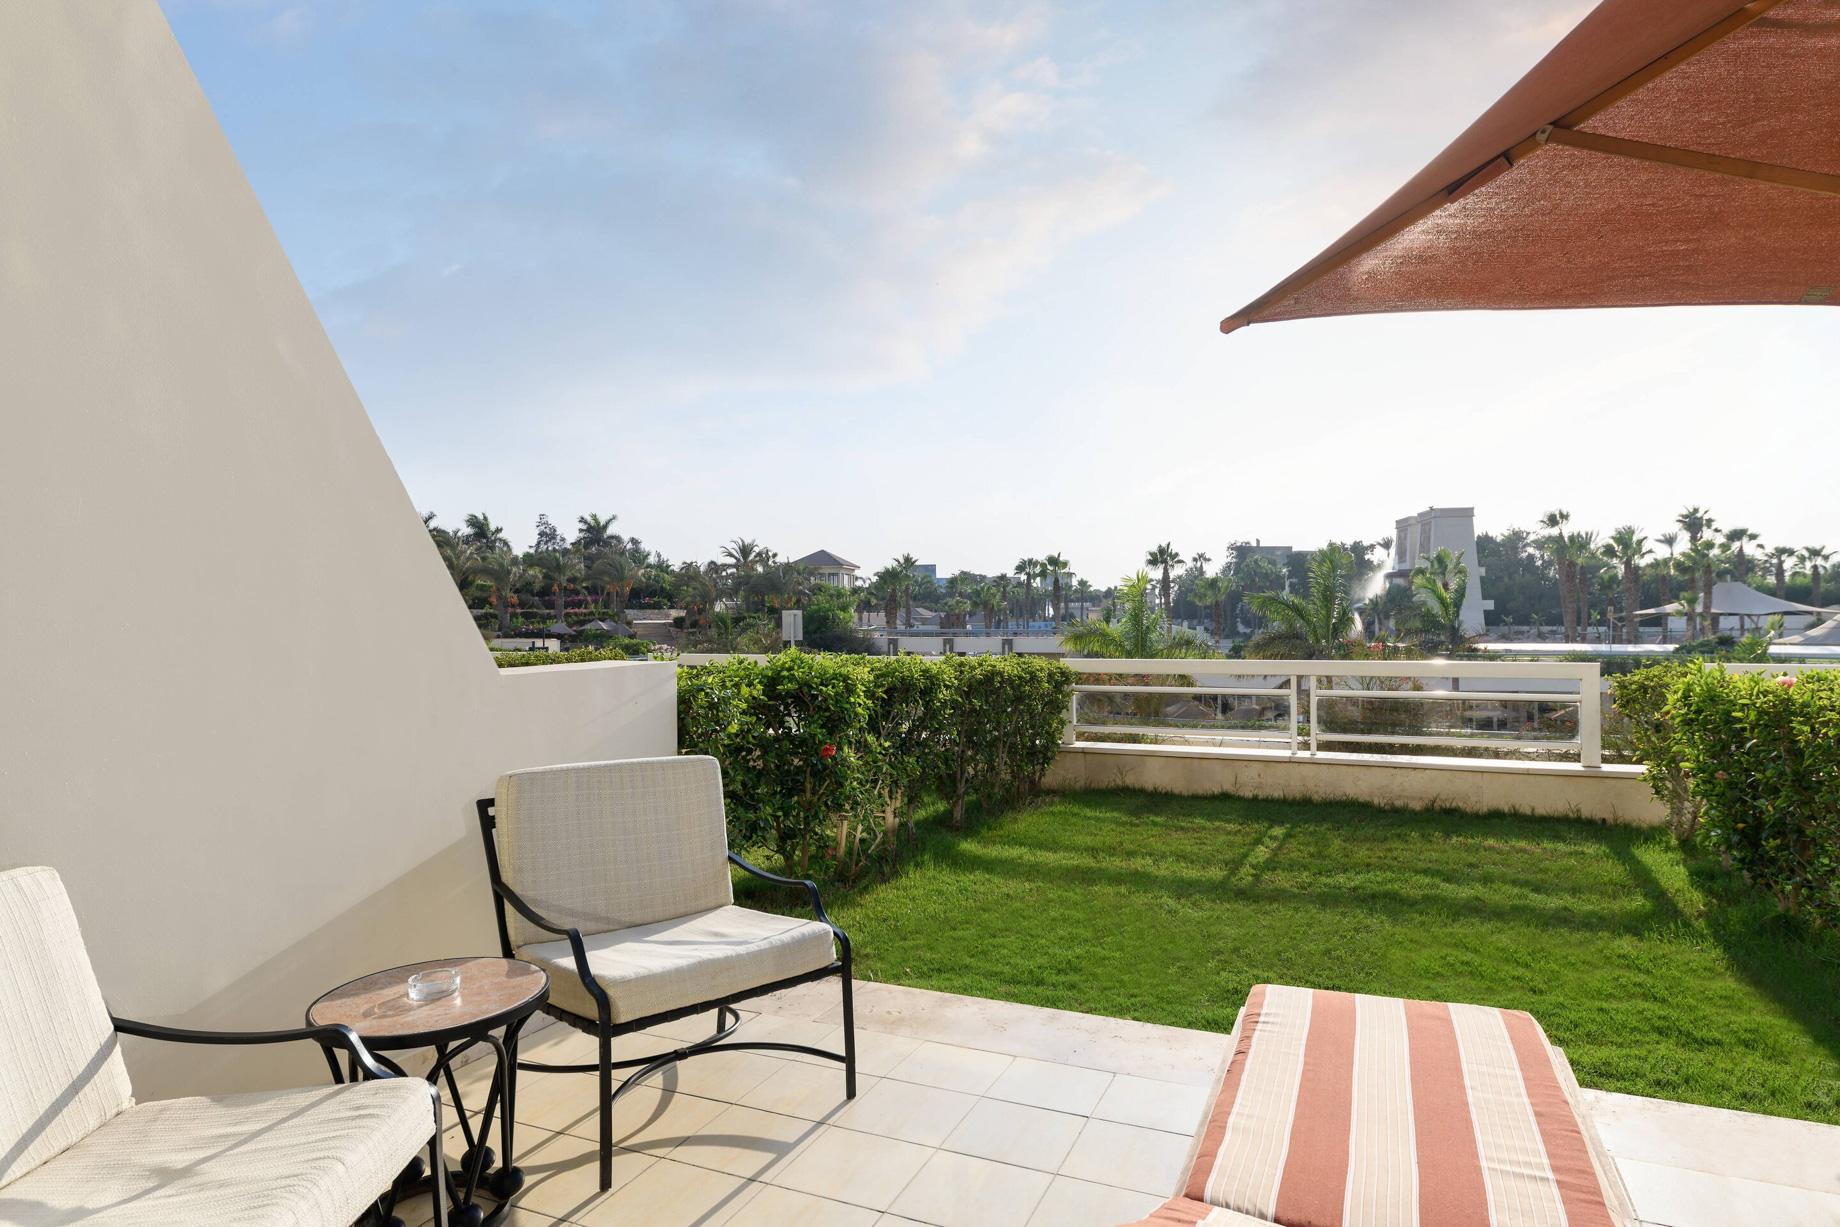 JW Marriott Hotel Cairo – Cairo, Egypt – Deluxe Room Patio & Garden View